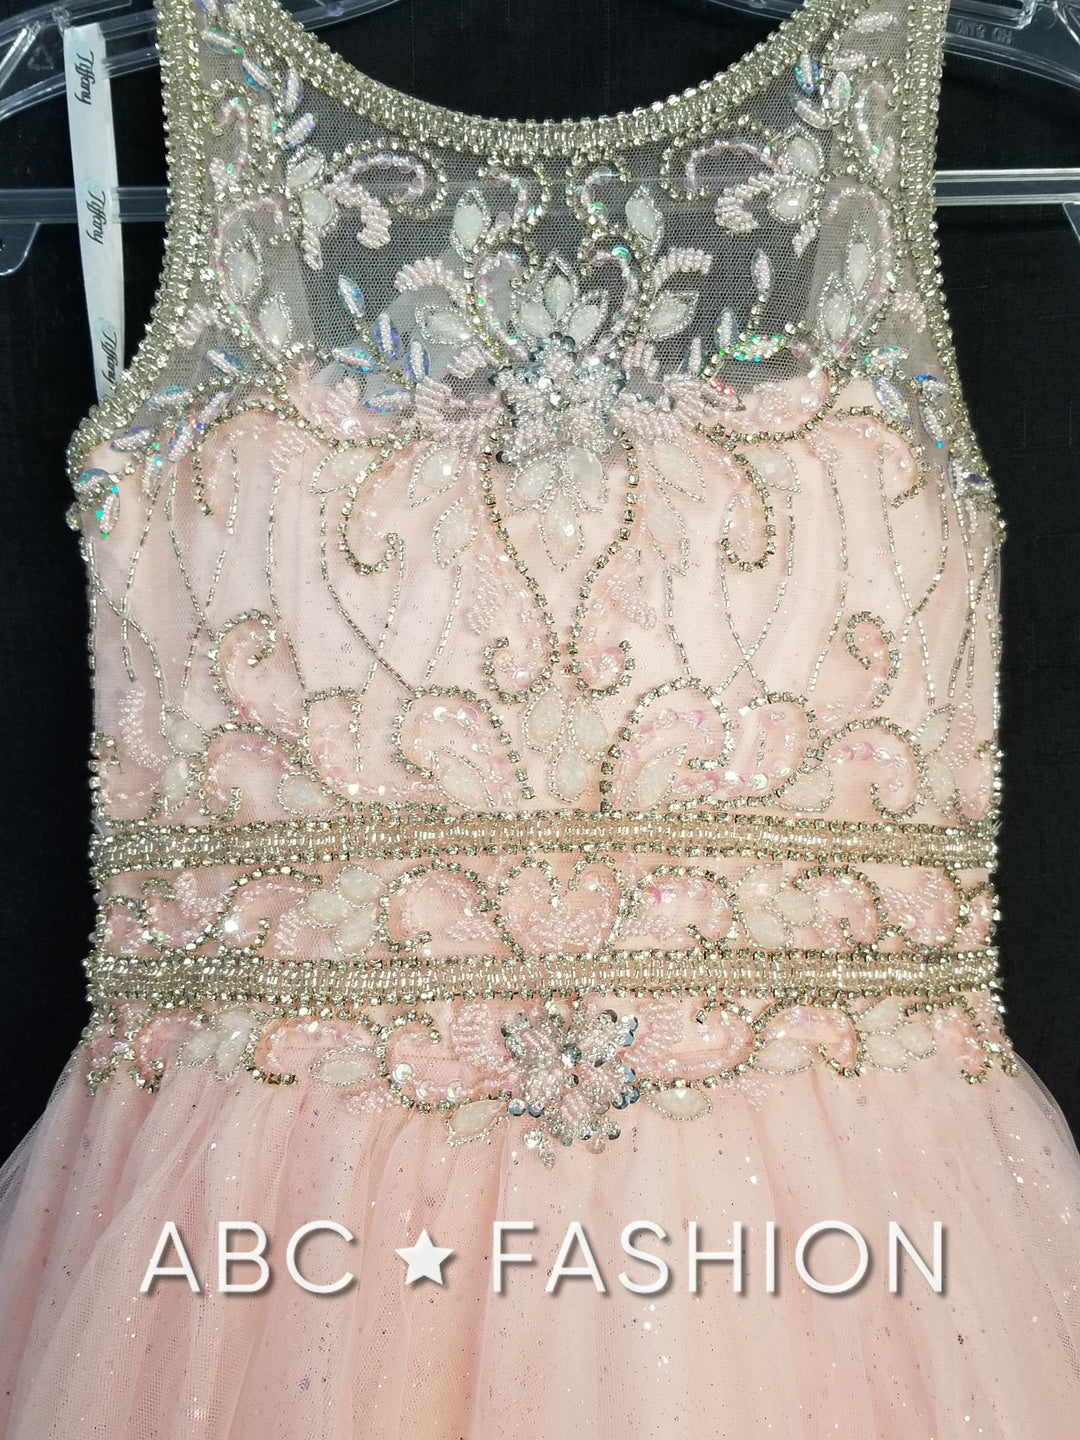 Girls Long Illusion Glitter Dress by Tiffany Princess 13601